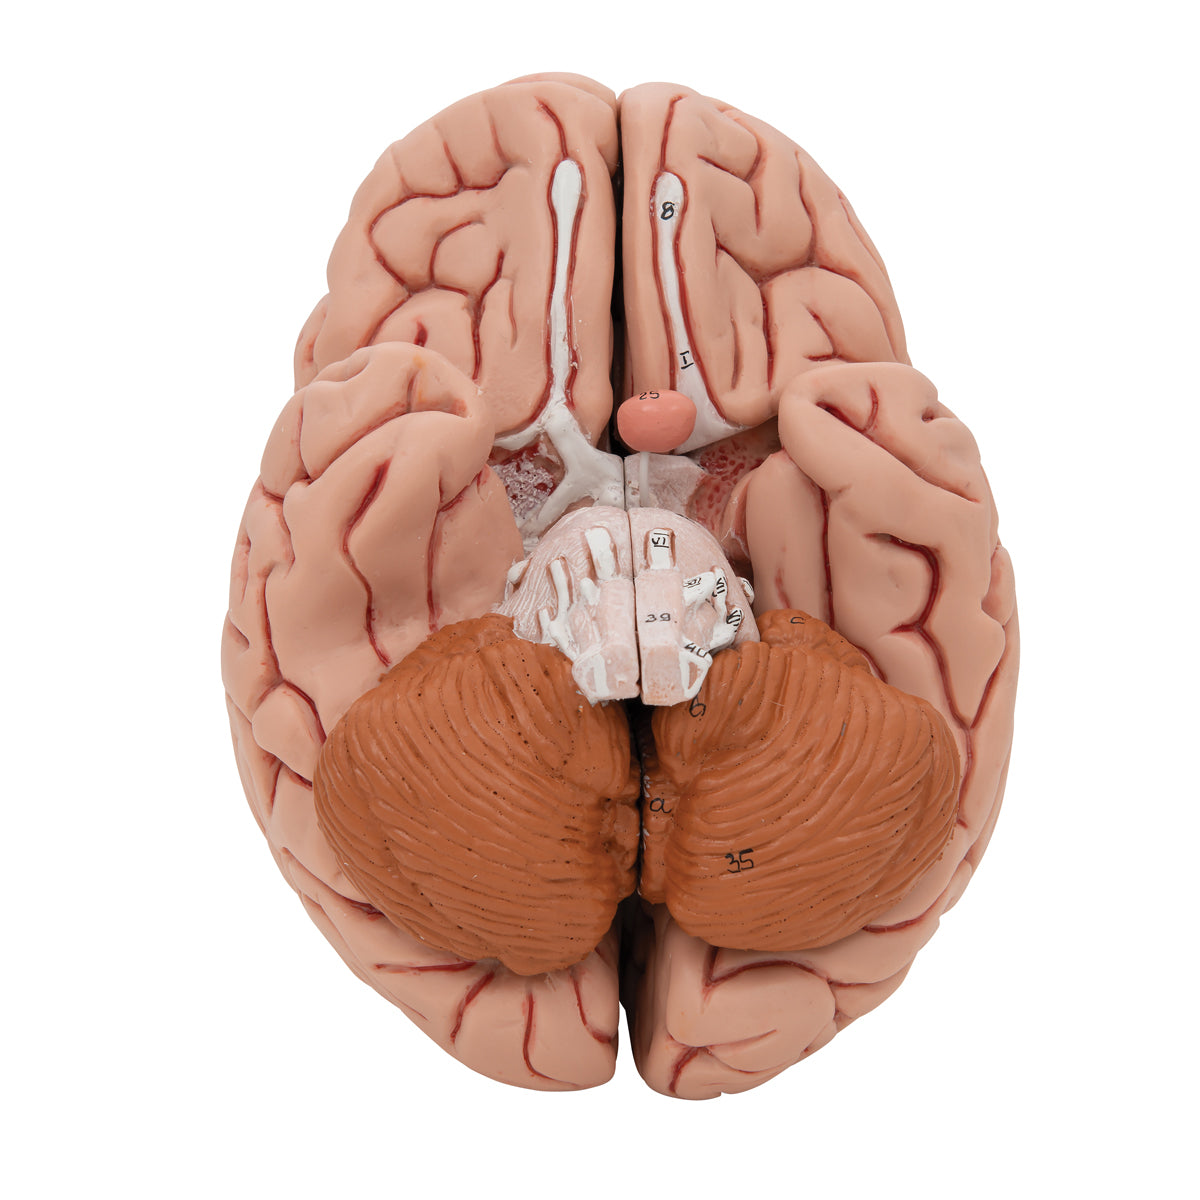 Hjernemodel med et mere naturtro udseende. Kan adskilles i 5 dele